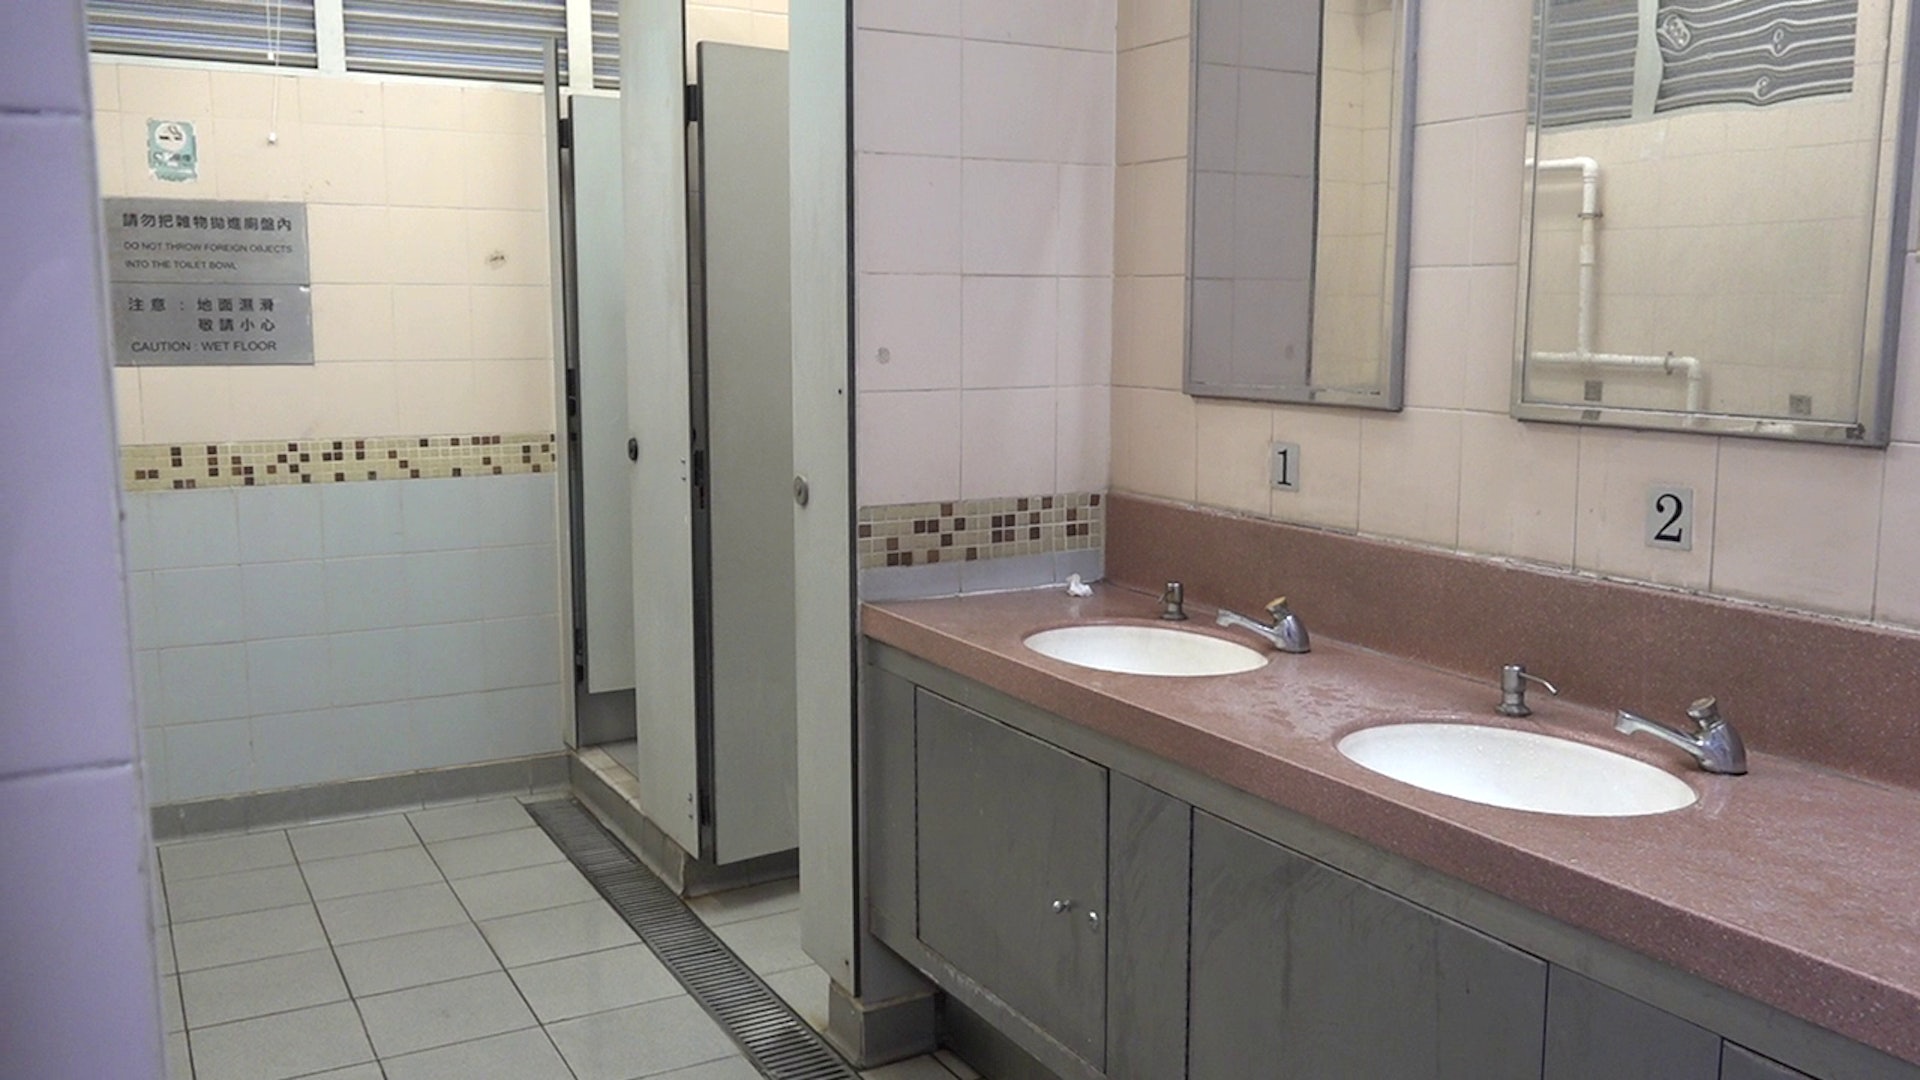 香港廁所協會11月18日公布三大最佳廁所及最急待改善廁所，兩大地獄公廁疑似被洗太平地，未見有糞便及廁紙等污穢物。(馬楚烽攝)